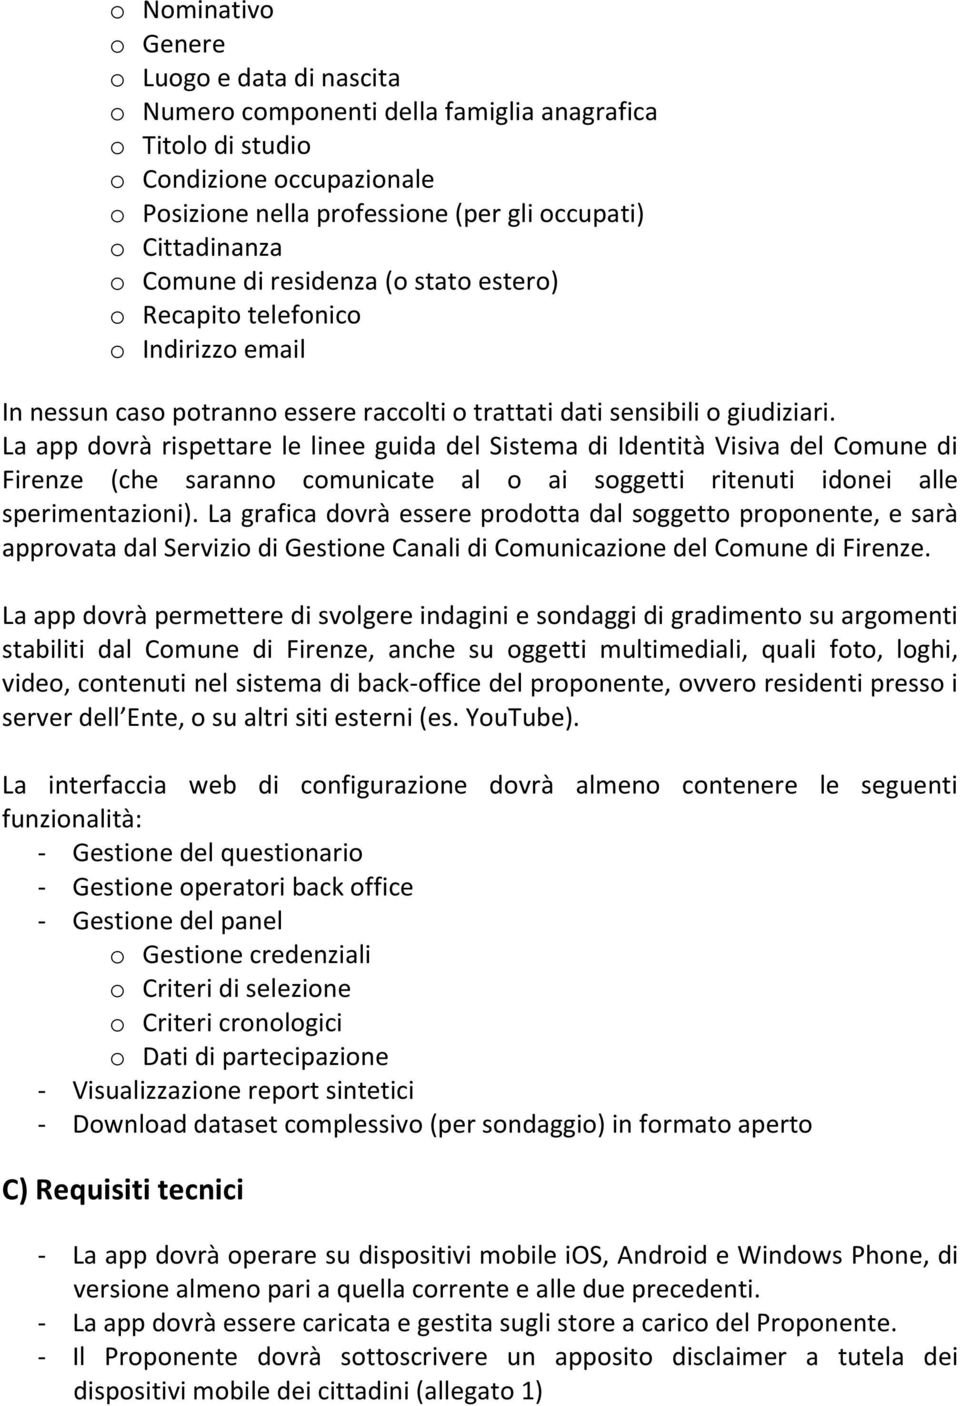 La app dovrà rispettare le linee guida del Sistema di Identità Visiva del Comune di Firenze (che saranno comunicate al o ai soggetti ritenuti idonei alle sperimentazioni).